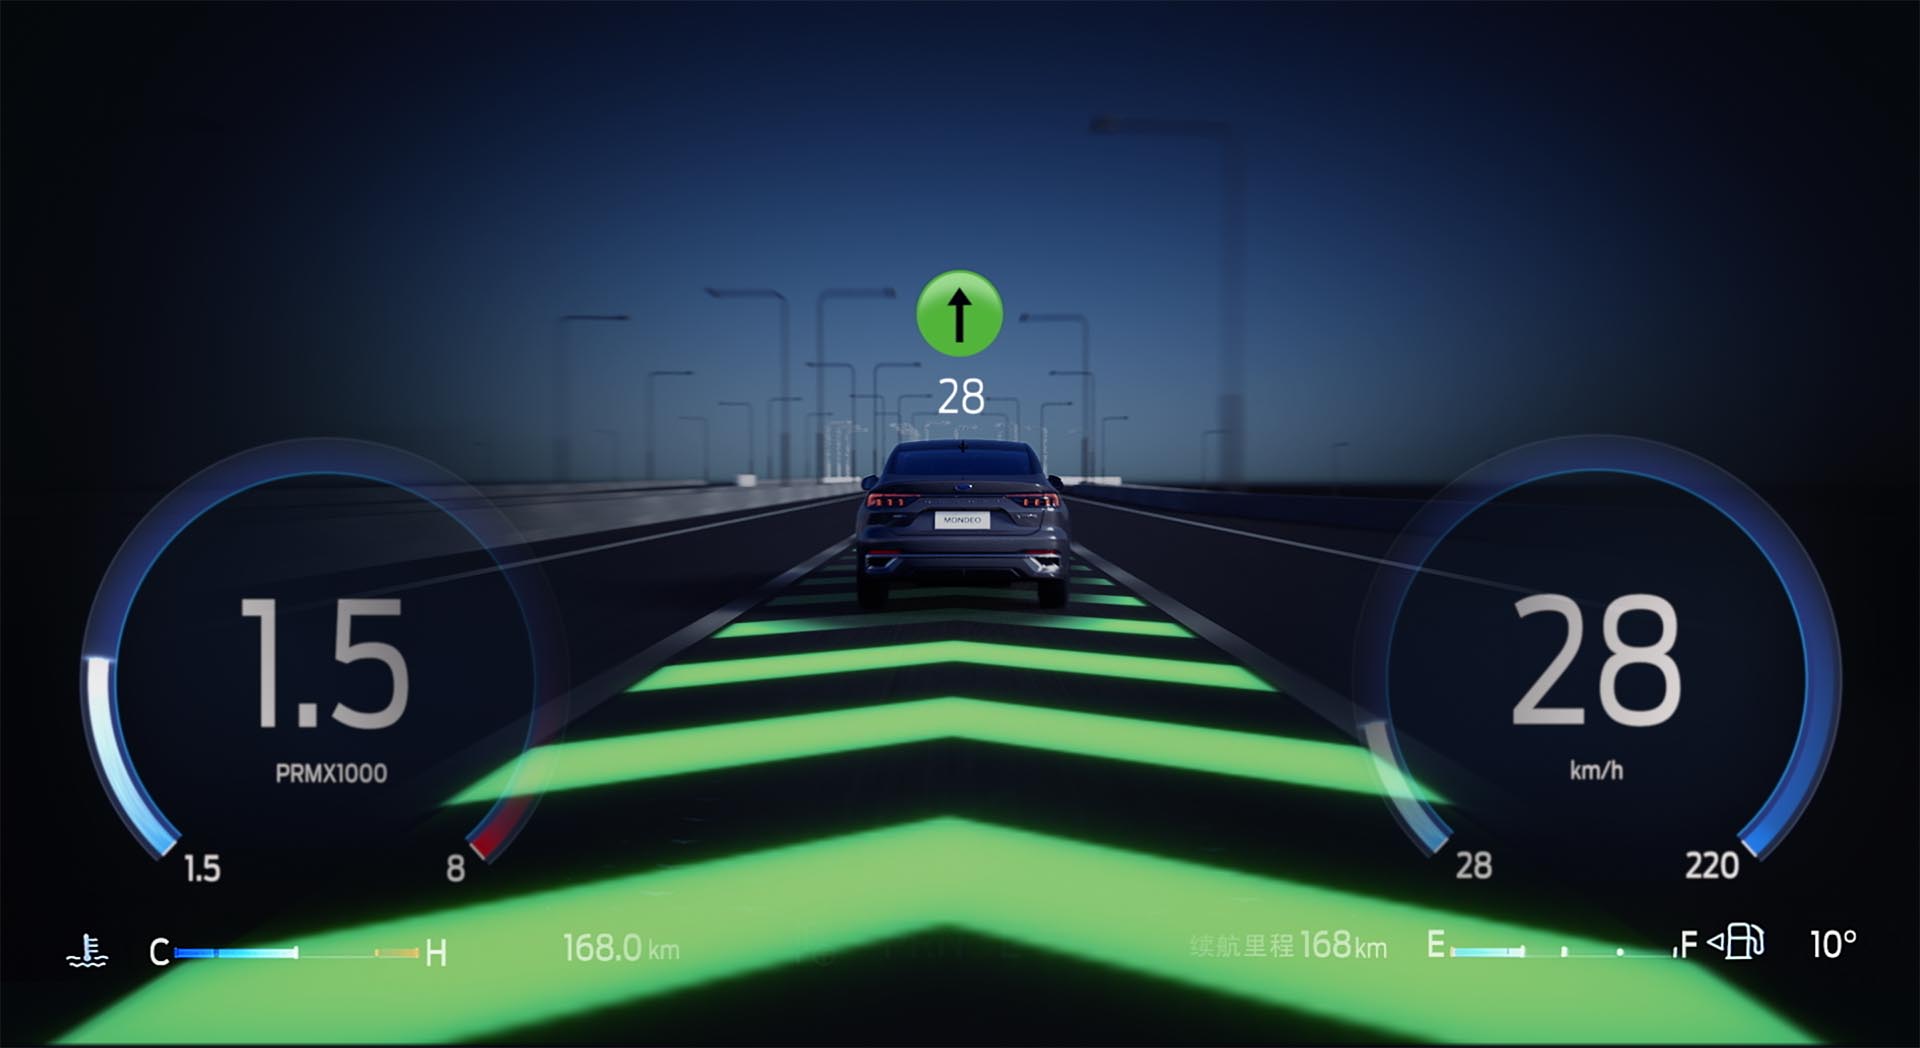 福特车路协同系统可以将前方路口的红绿灯状态等信息非常直观地显示在仪表盘上.jpg